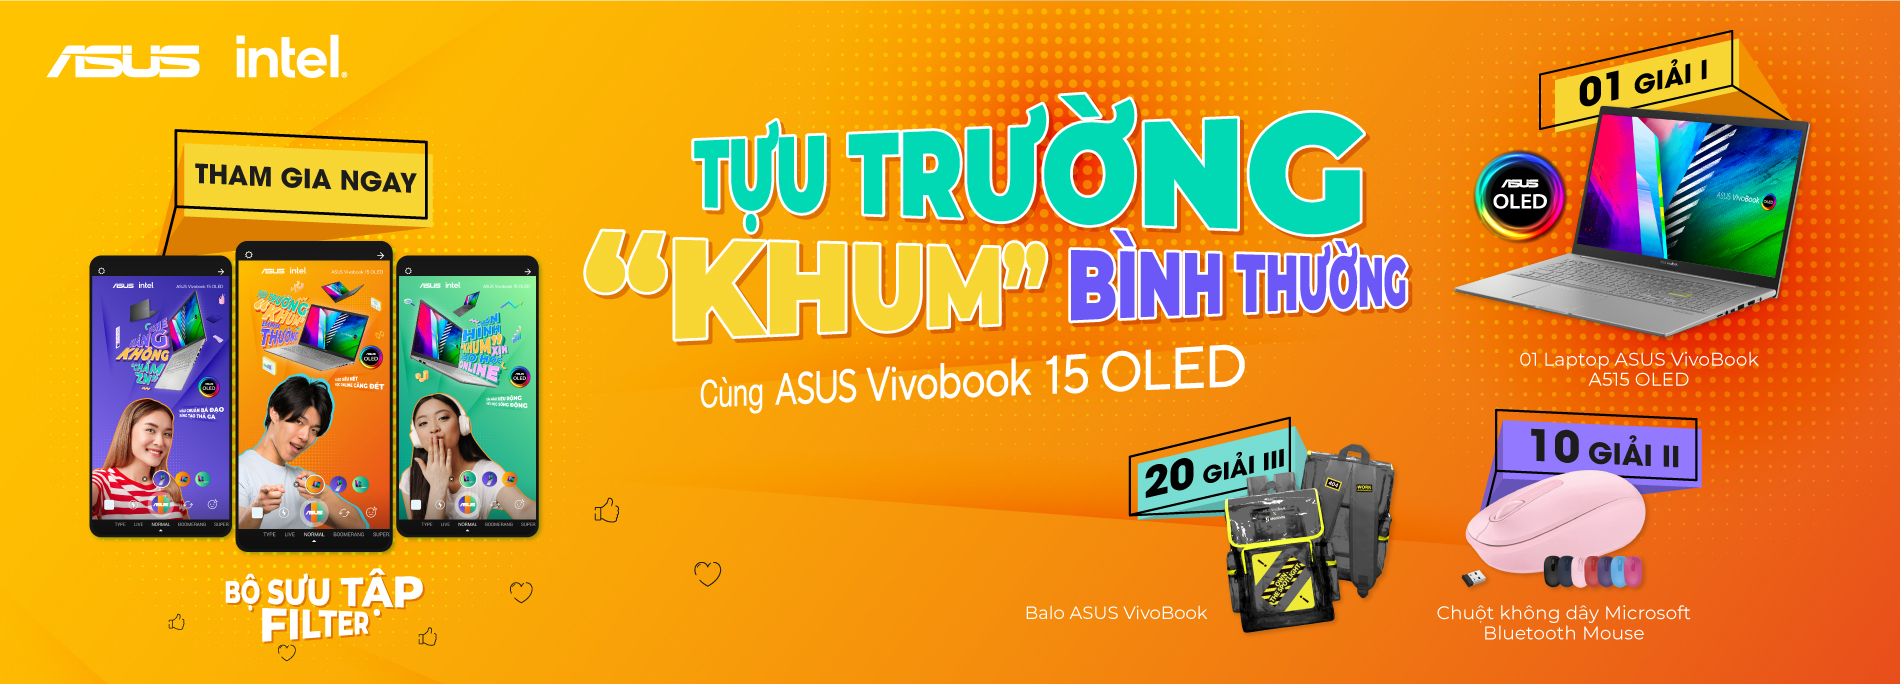 Tựu Trường "Khum" Bình Thường Cùng ASUS VivoBook 15 OLED (A515)